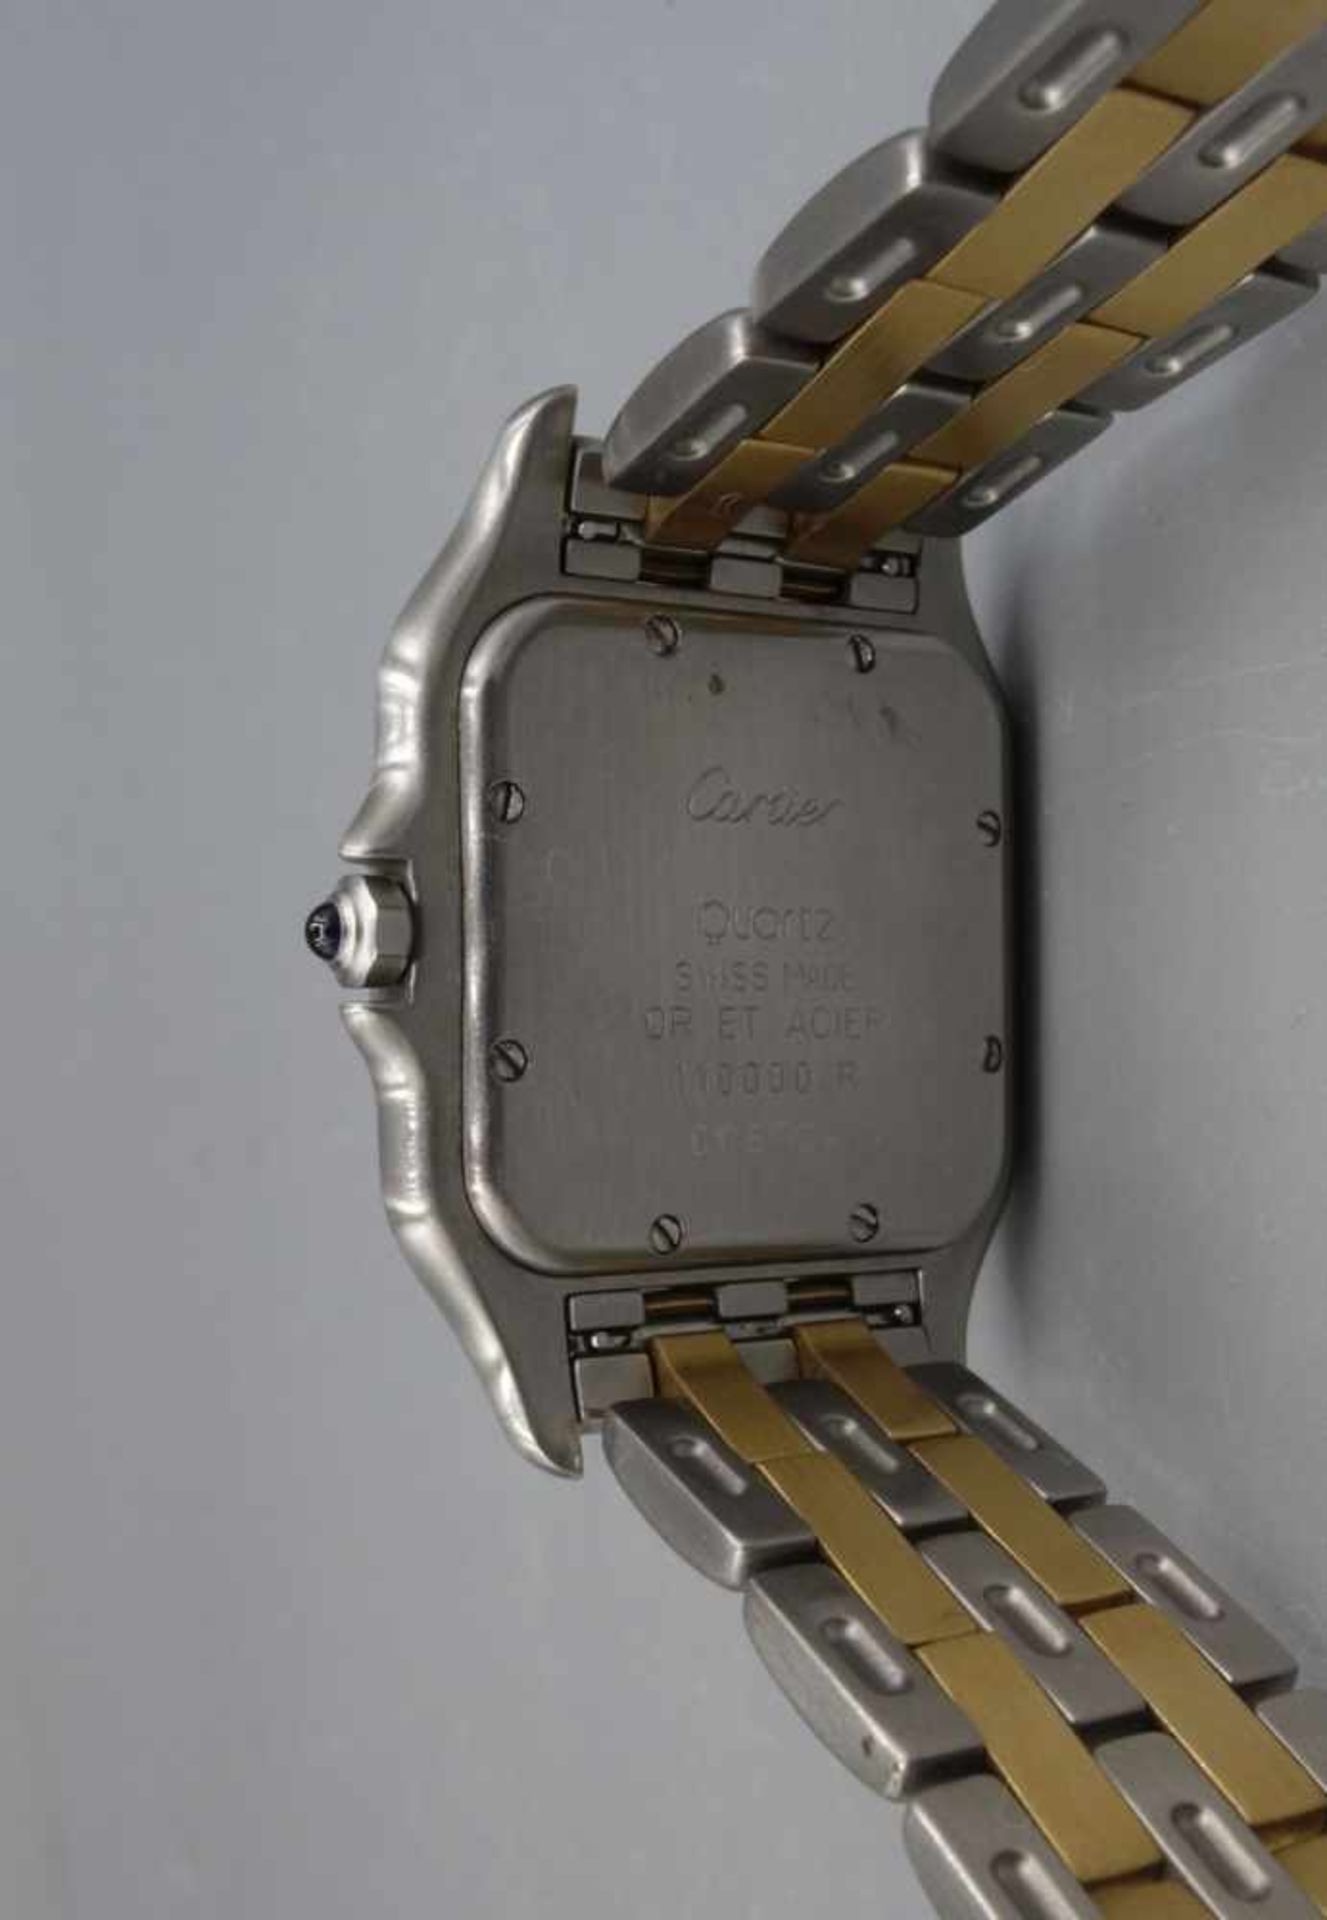 VINTAGE ARMBANDUHR - Cartier "Panthere" / wristwatch, Mitte 20. Jh., Quartz-Uhr, Manufaktur - Bild 5 aus 7